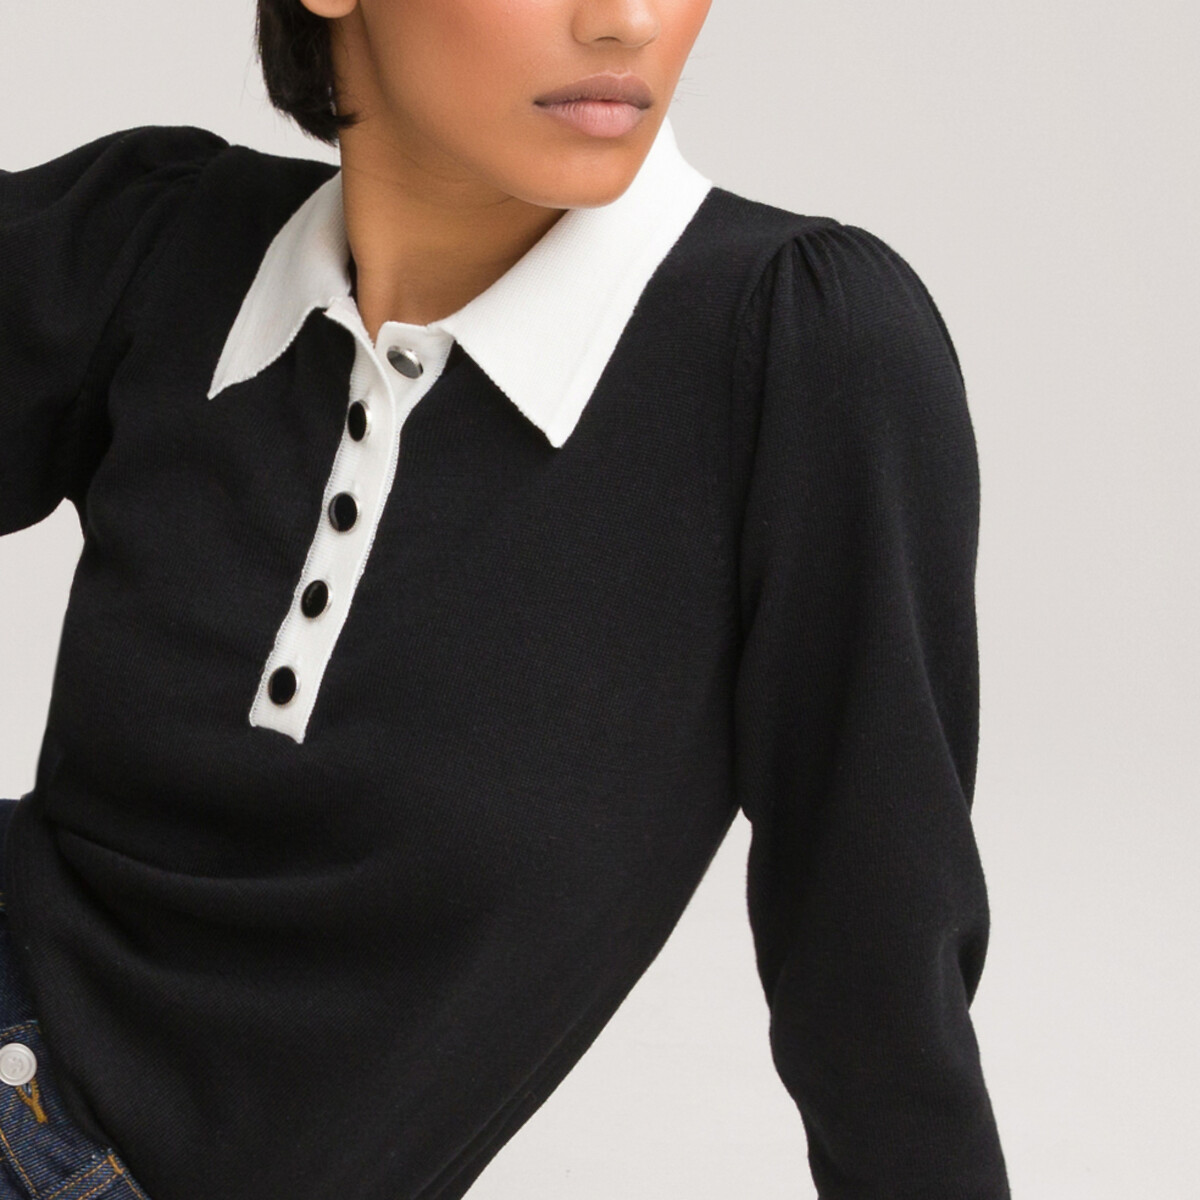 Пуловер LaRedoute С воротником-поло двухцветный декоративные пуговицы M черный, размер M - фото 1